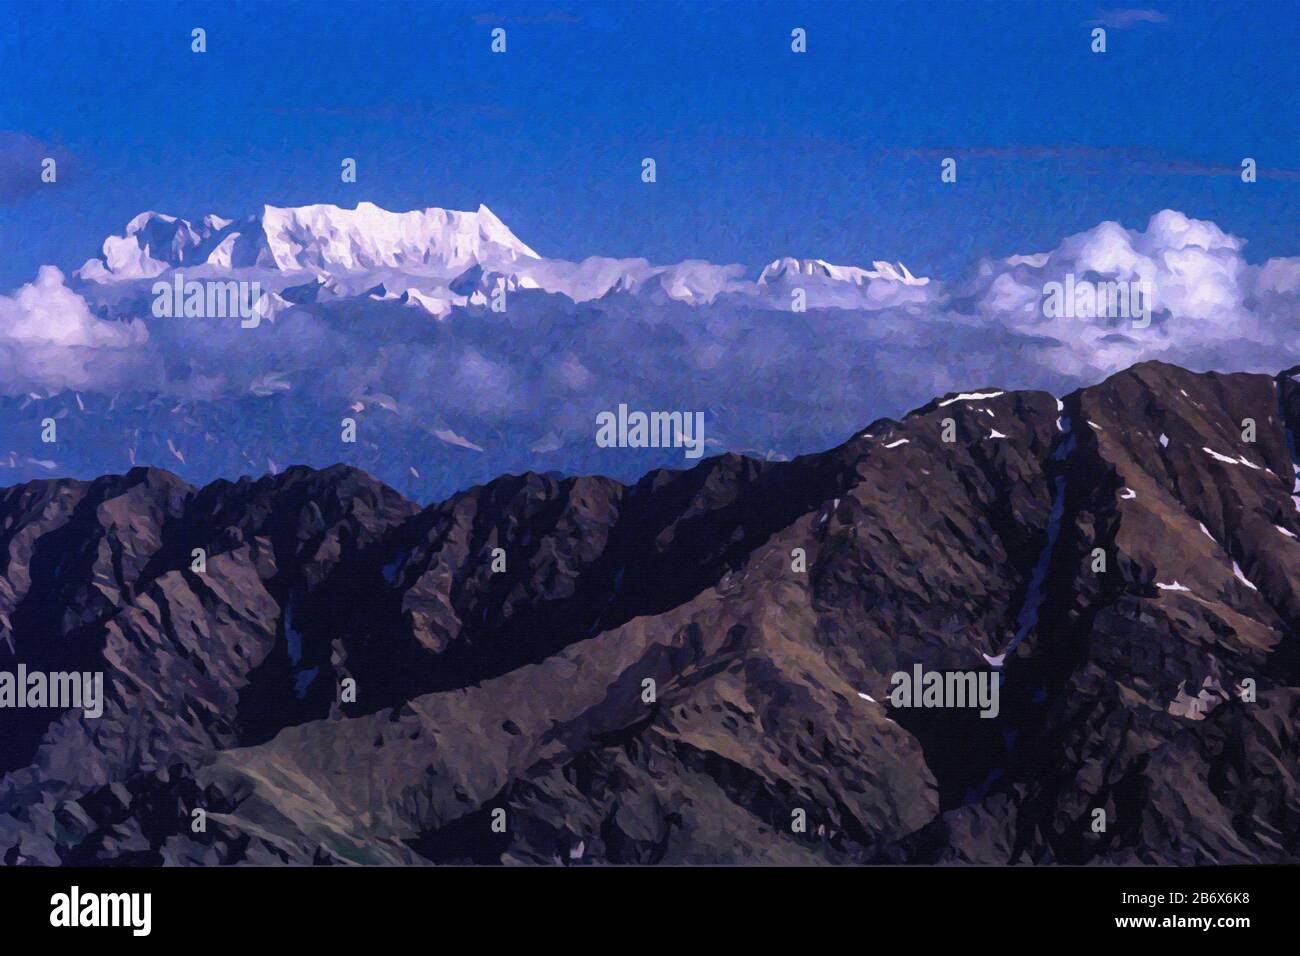 Digitale Gemälde: Chaukhamba Peaks-165 Chaukhamba ist ein Bergmassiv mit vier Säulen in der Gangotri-Gruppe des Garhwal Himalaya, Uttarakhand, Indien. Stockfoto